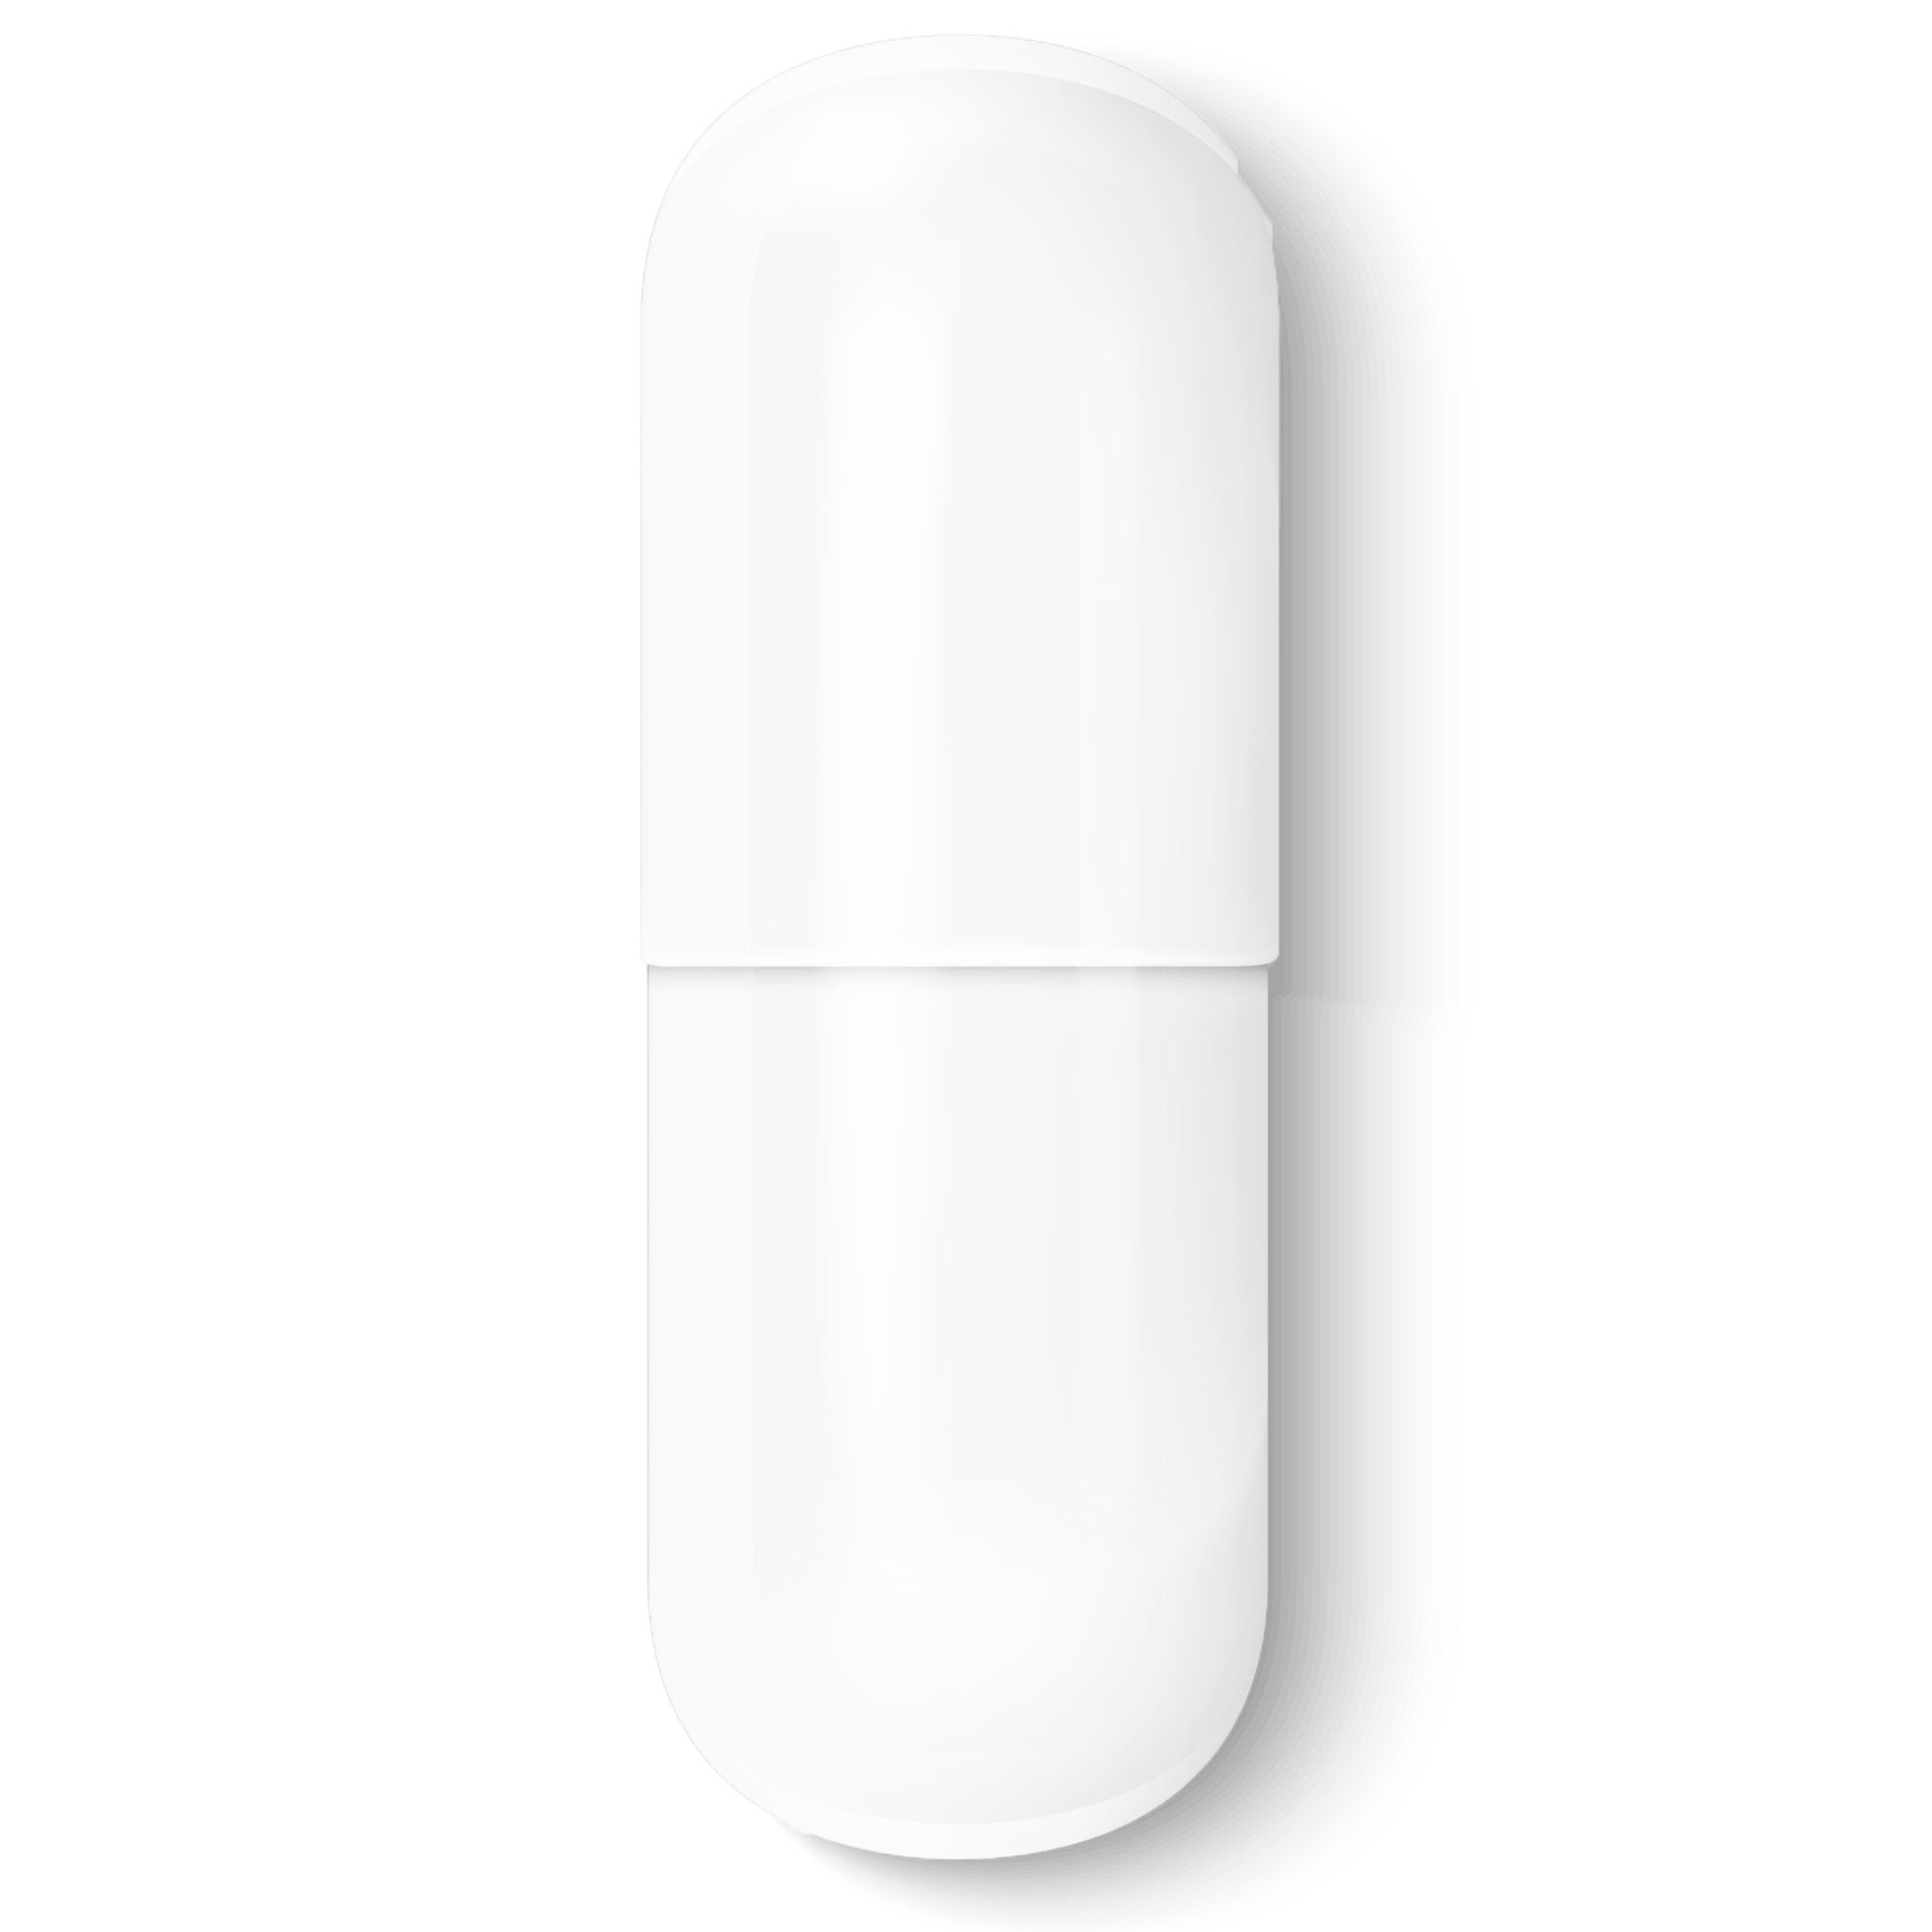 Size #3-White/White - Gelatin Capsules